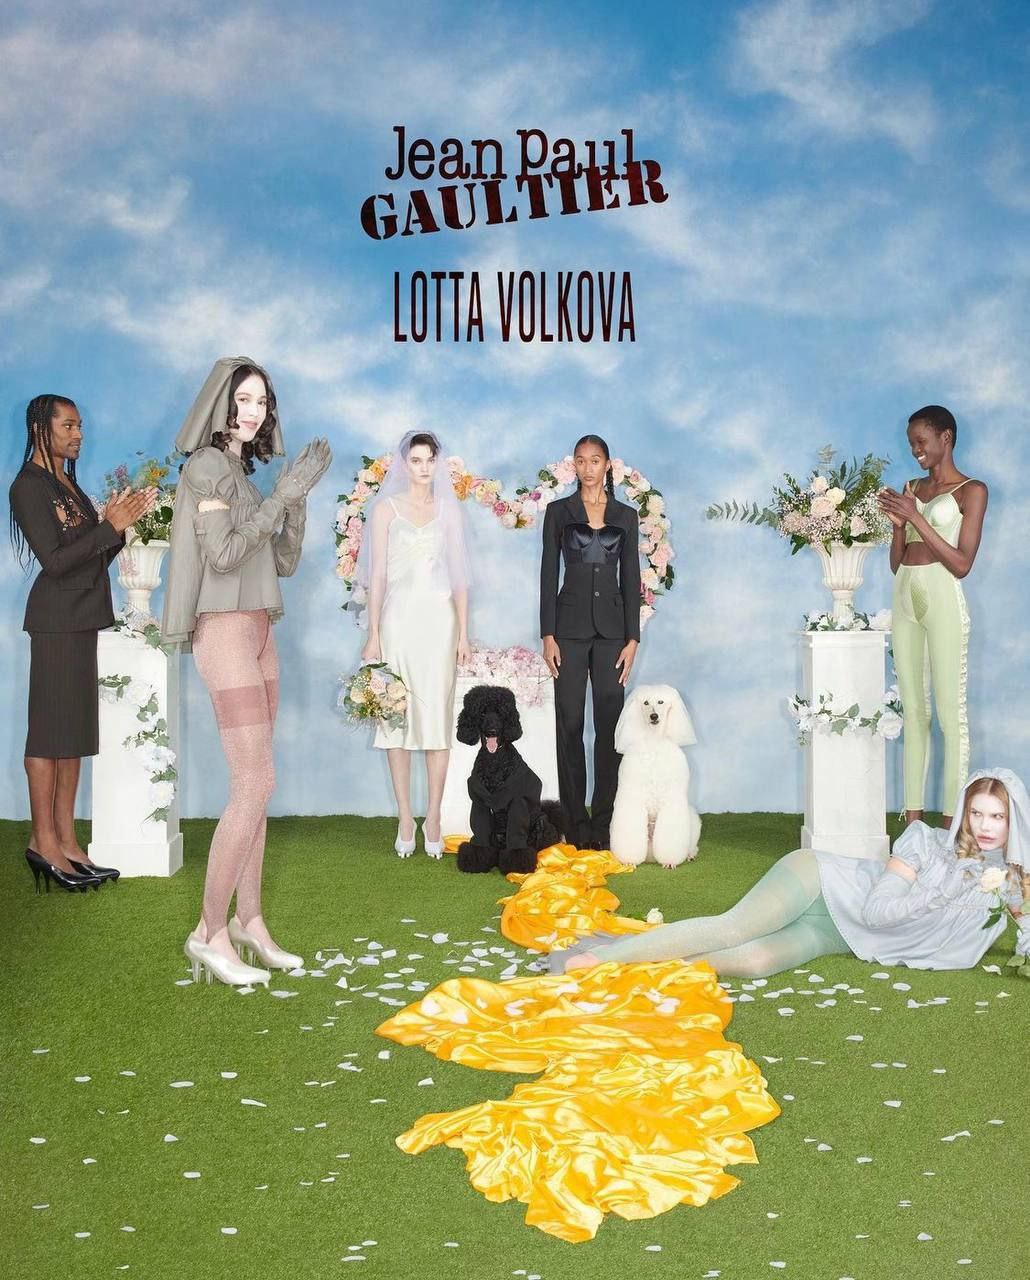 Лотта Волкова создала капсульную коллекцию для Jean Paul Gaultier (фото 1)